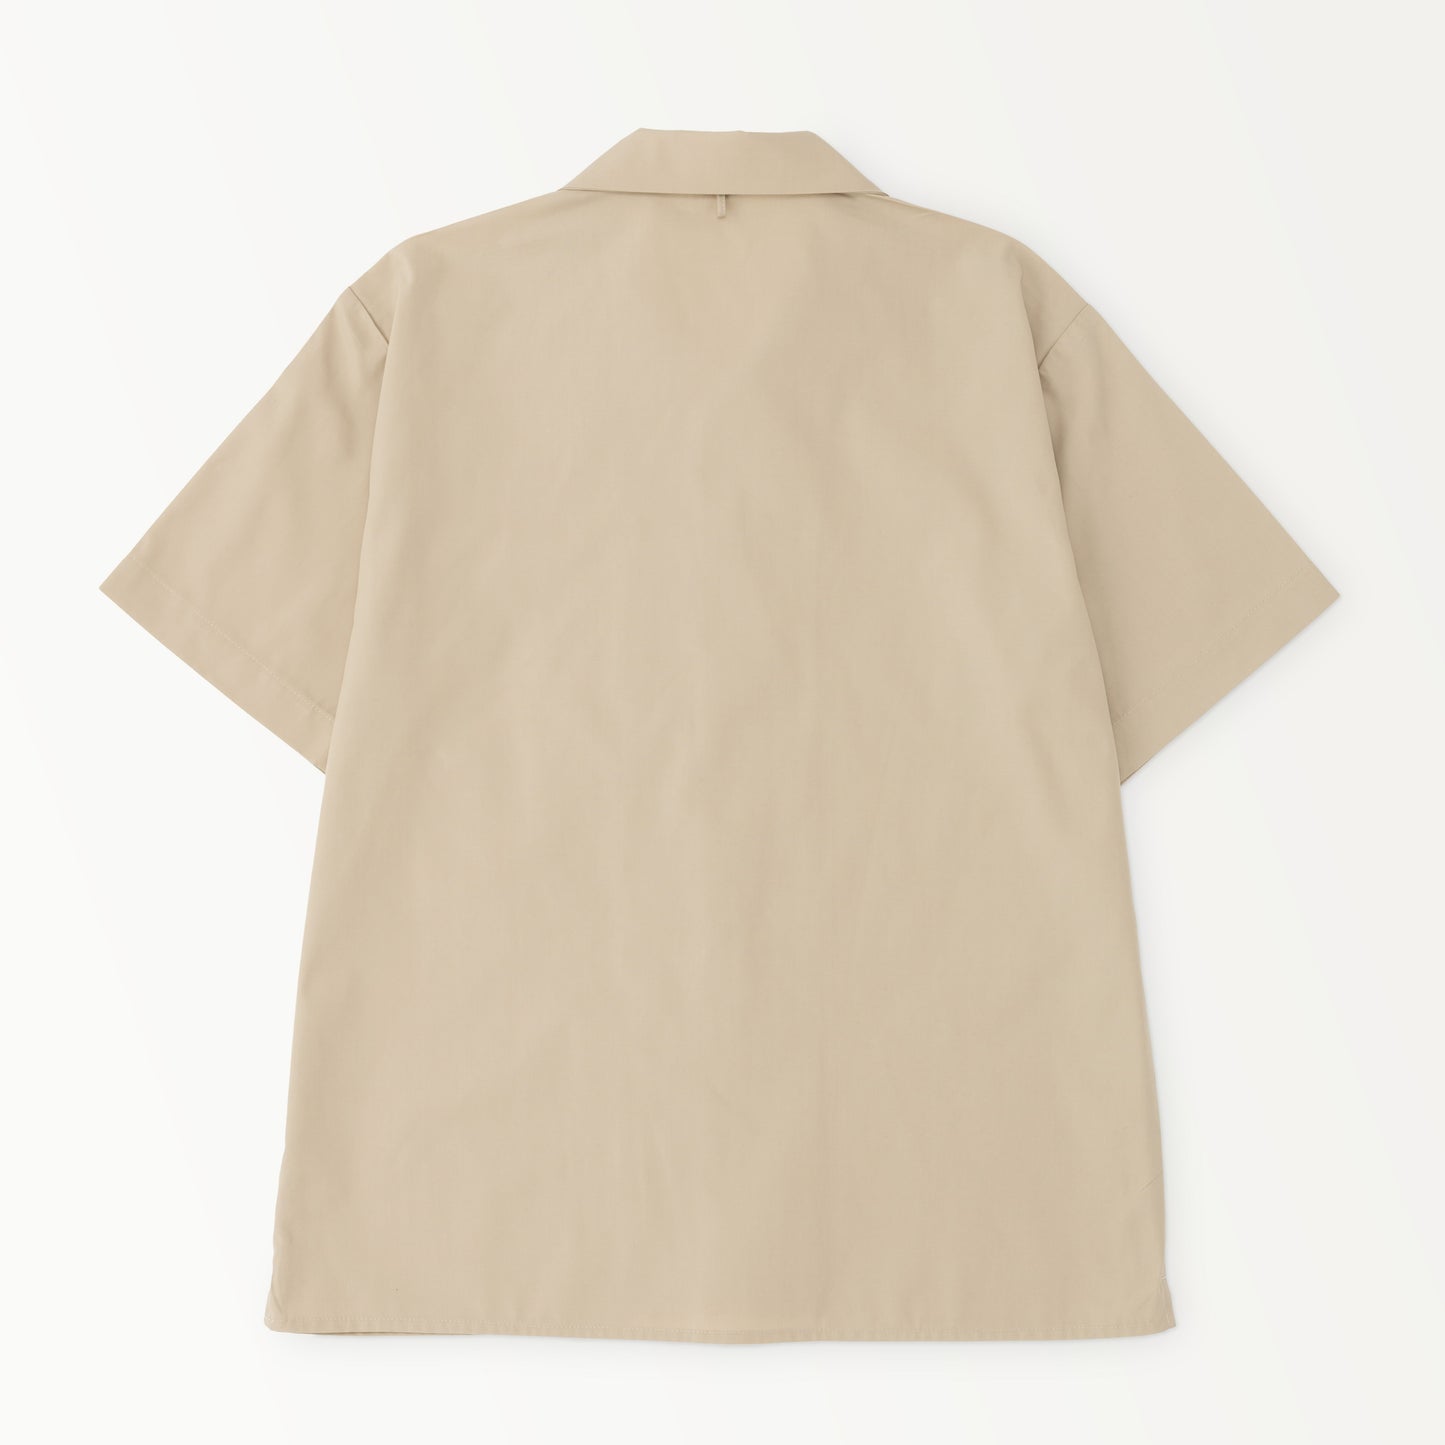 【限定生産】Classic Col. / Open collar shirt